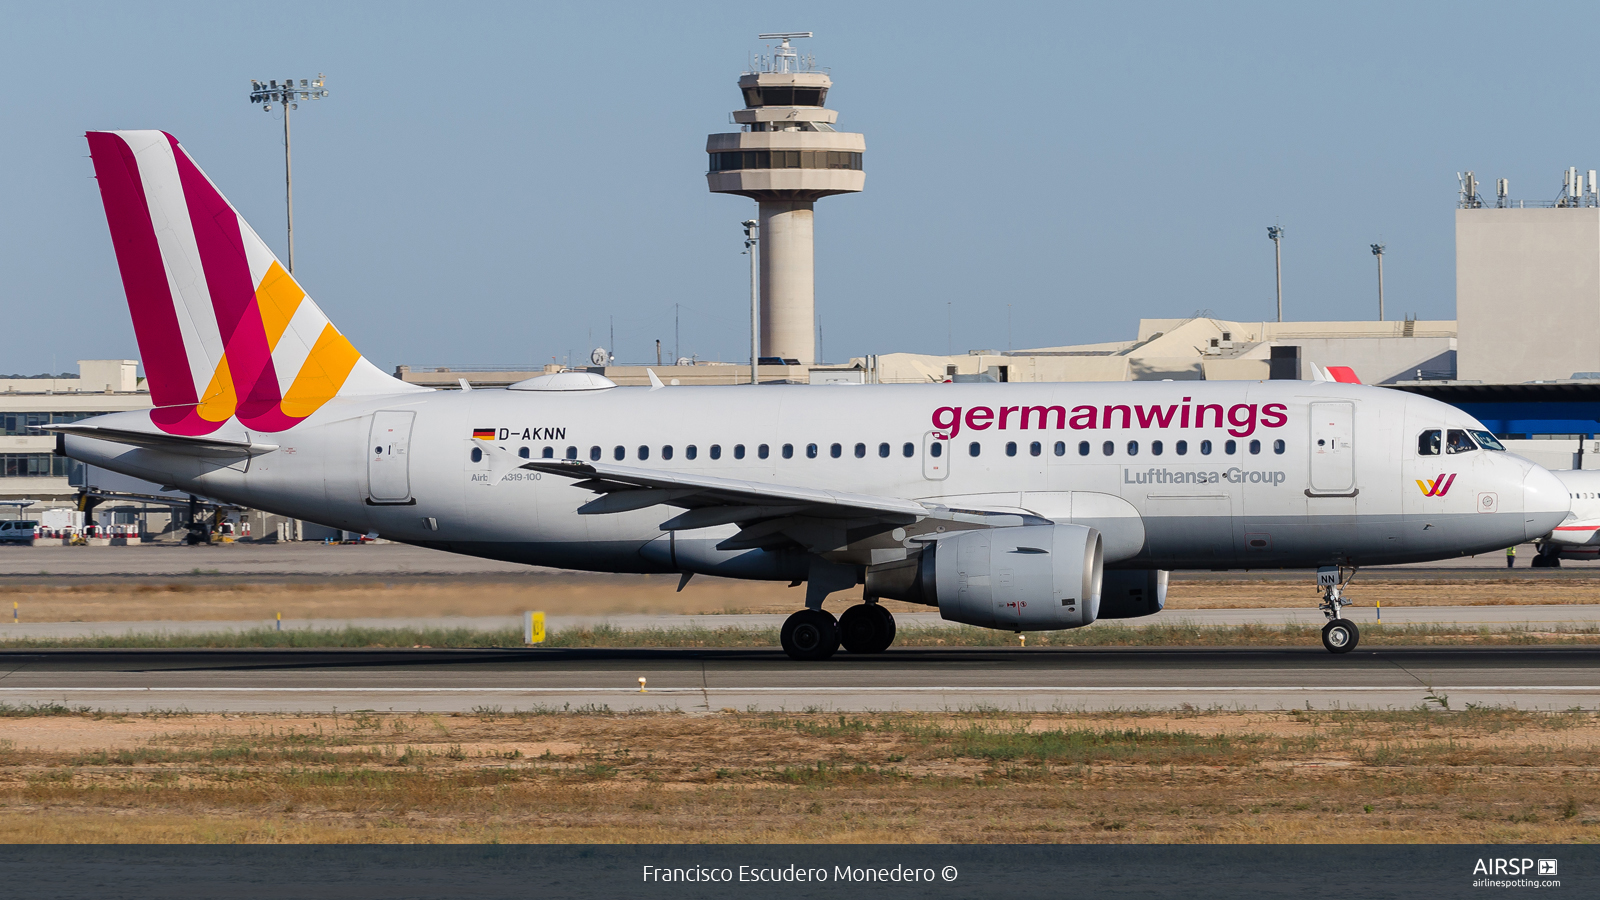 Germanwings  Airbus A319  D-AKNN